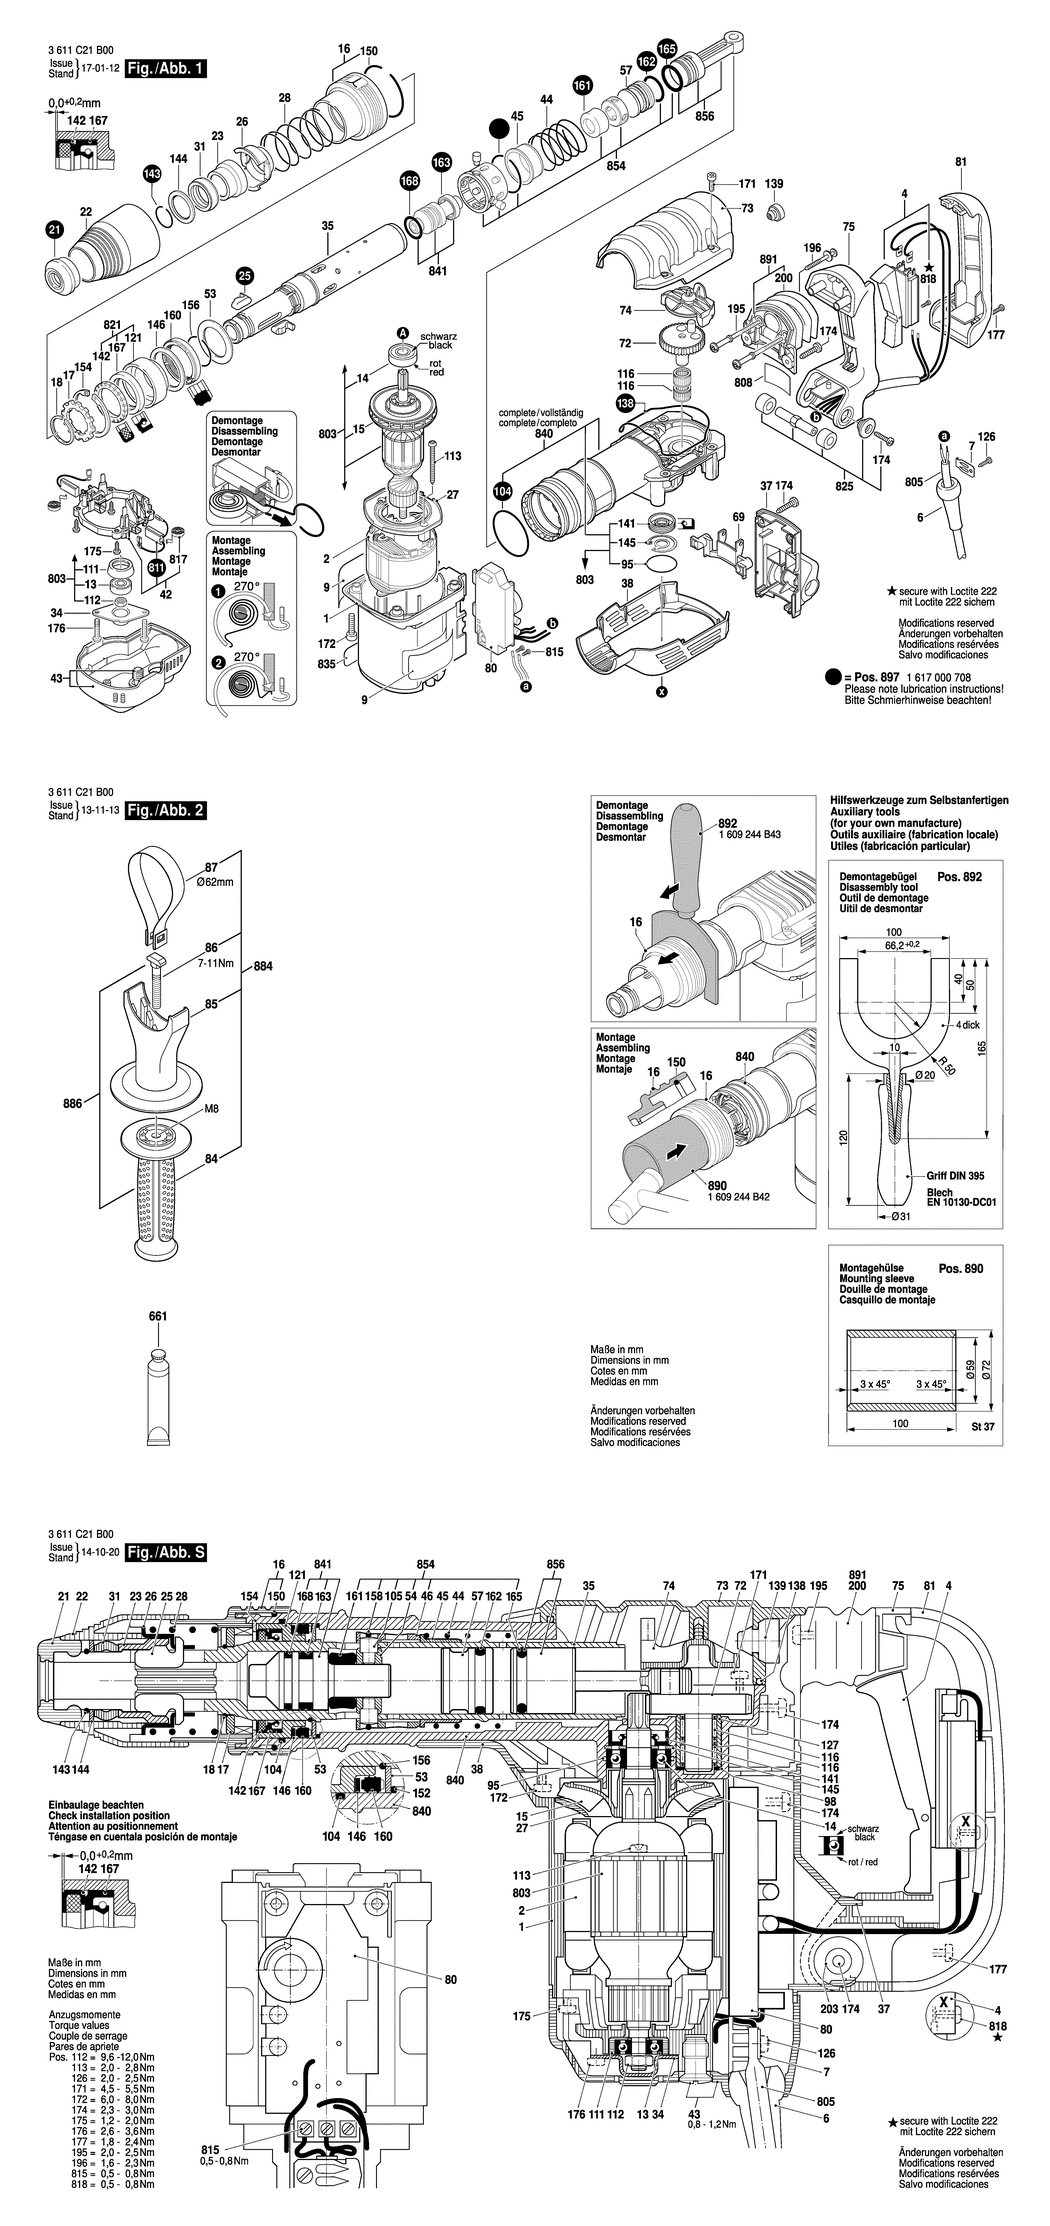 Bosch BCDH-5-1 / 3611C21B00 / EU 230 Volt Spare Parts